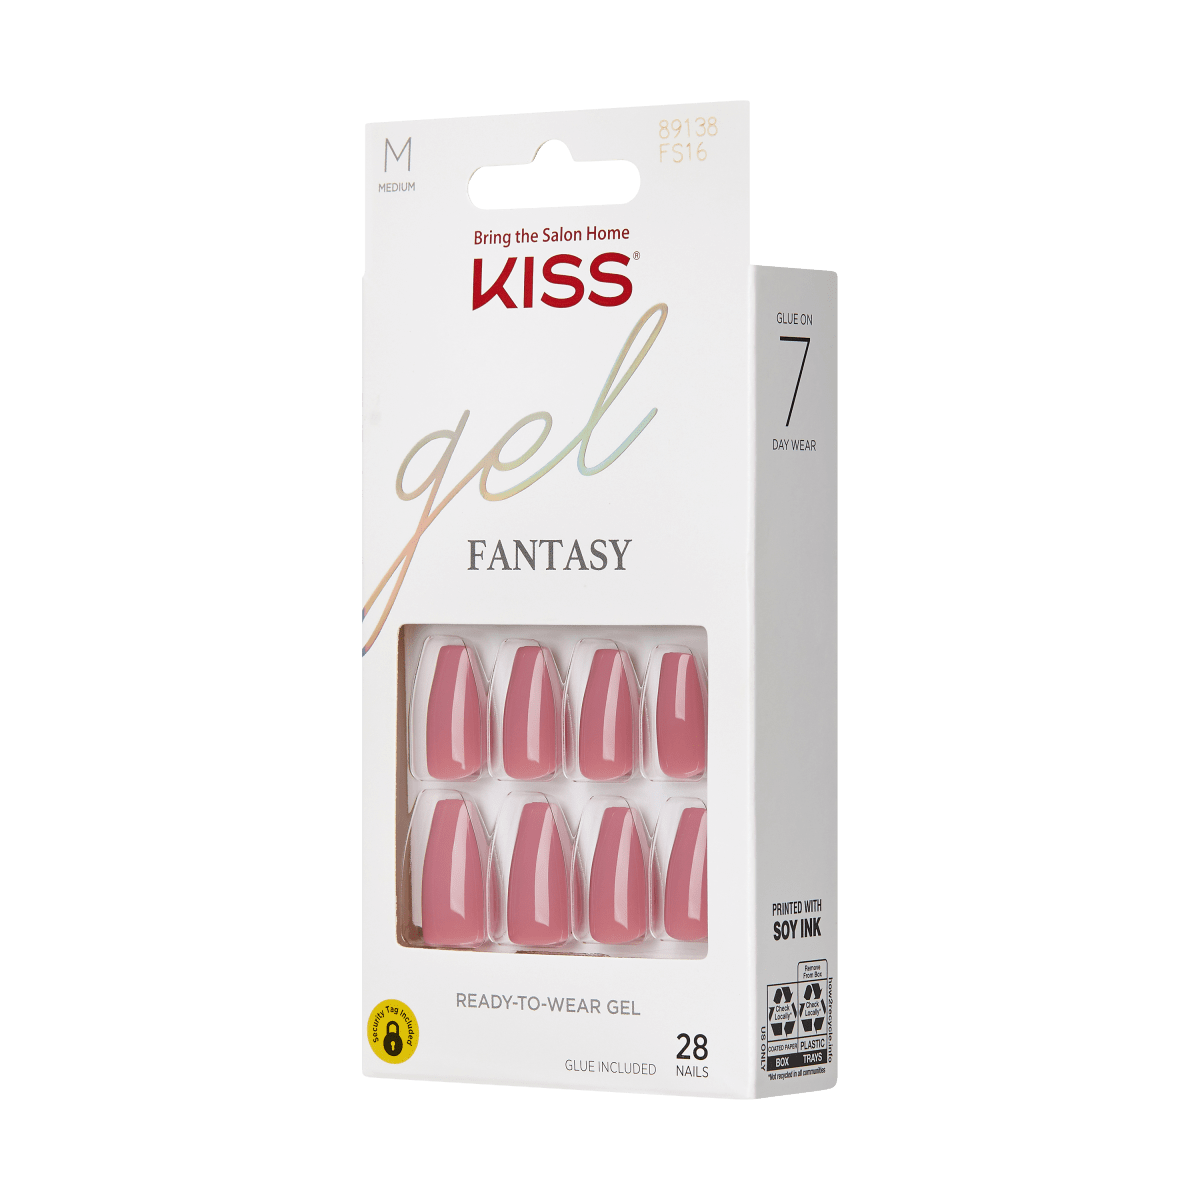 KISS Gel Fantasy, Press-On Nails, Letter To Ur EX, Pink, Med Coffin, 28ct